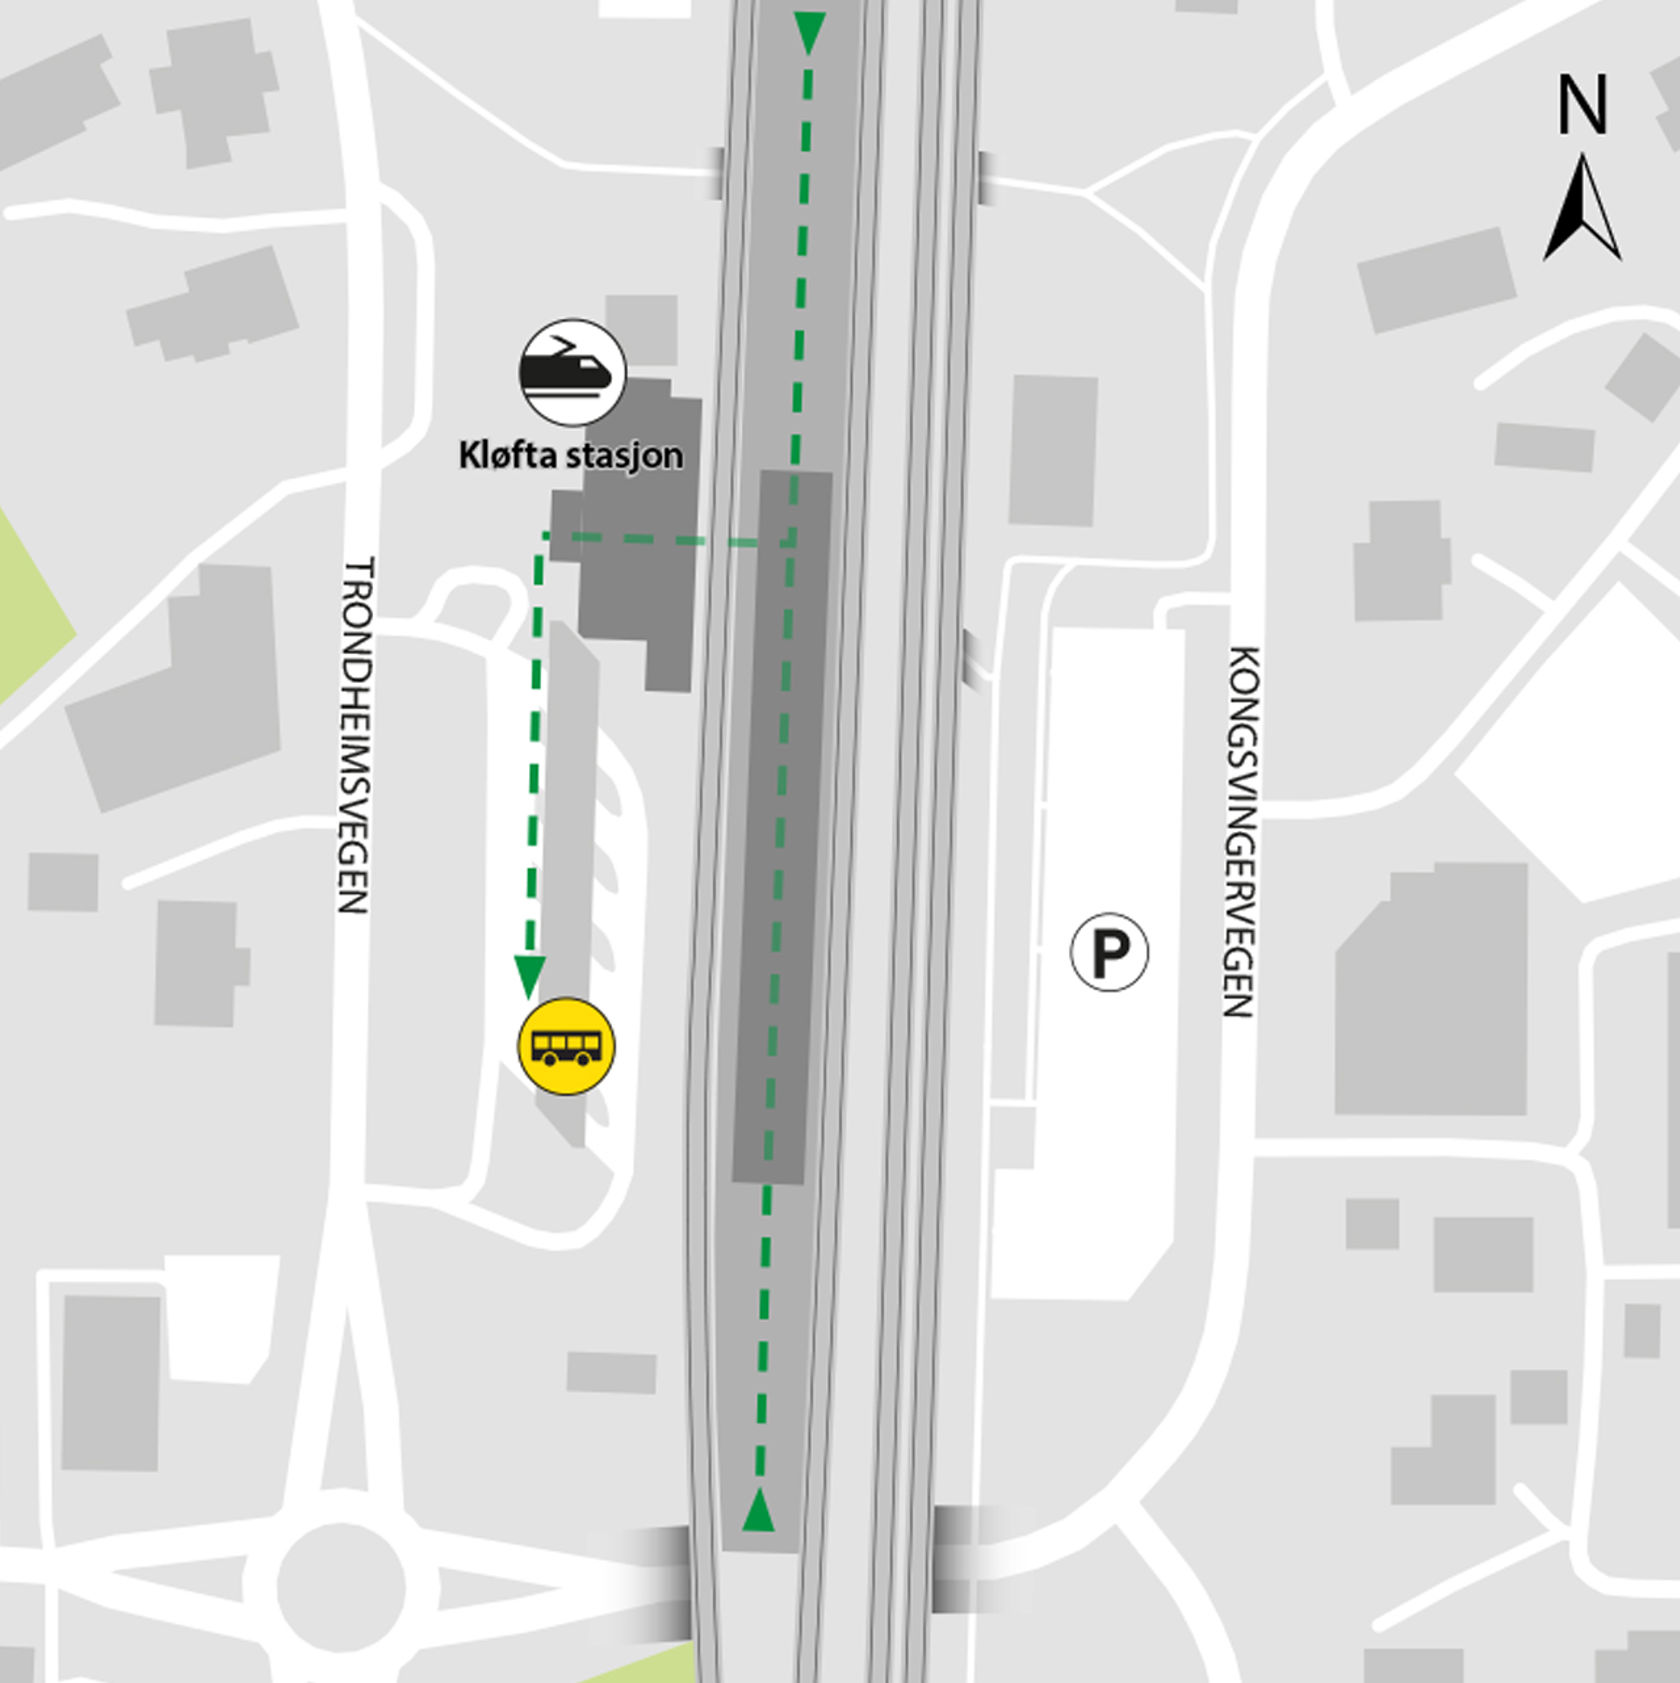 Kartet viser at bussene kjører fra bussholdeplassen Kløfta stasjon, plattform 5 og 6.